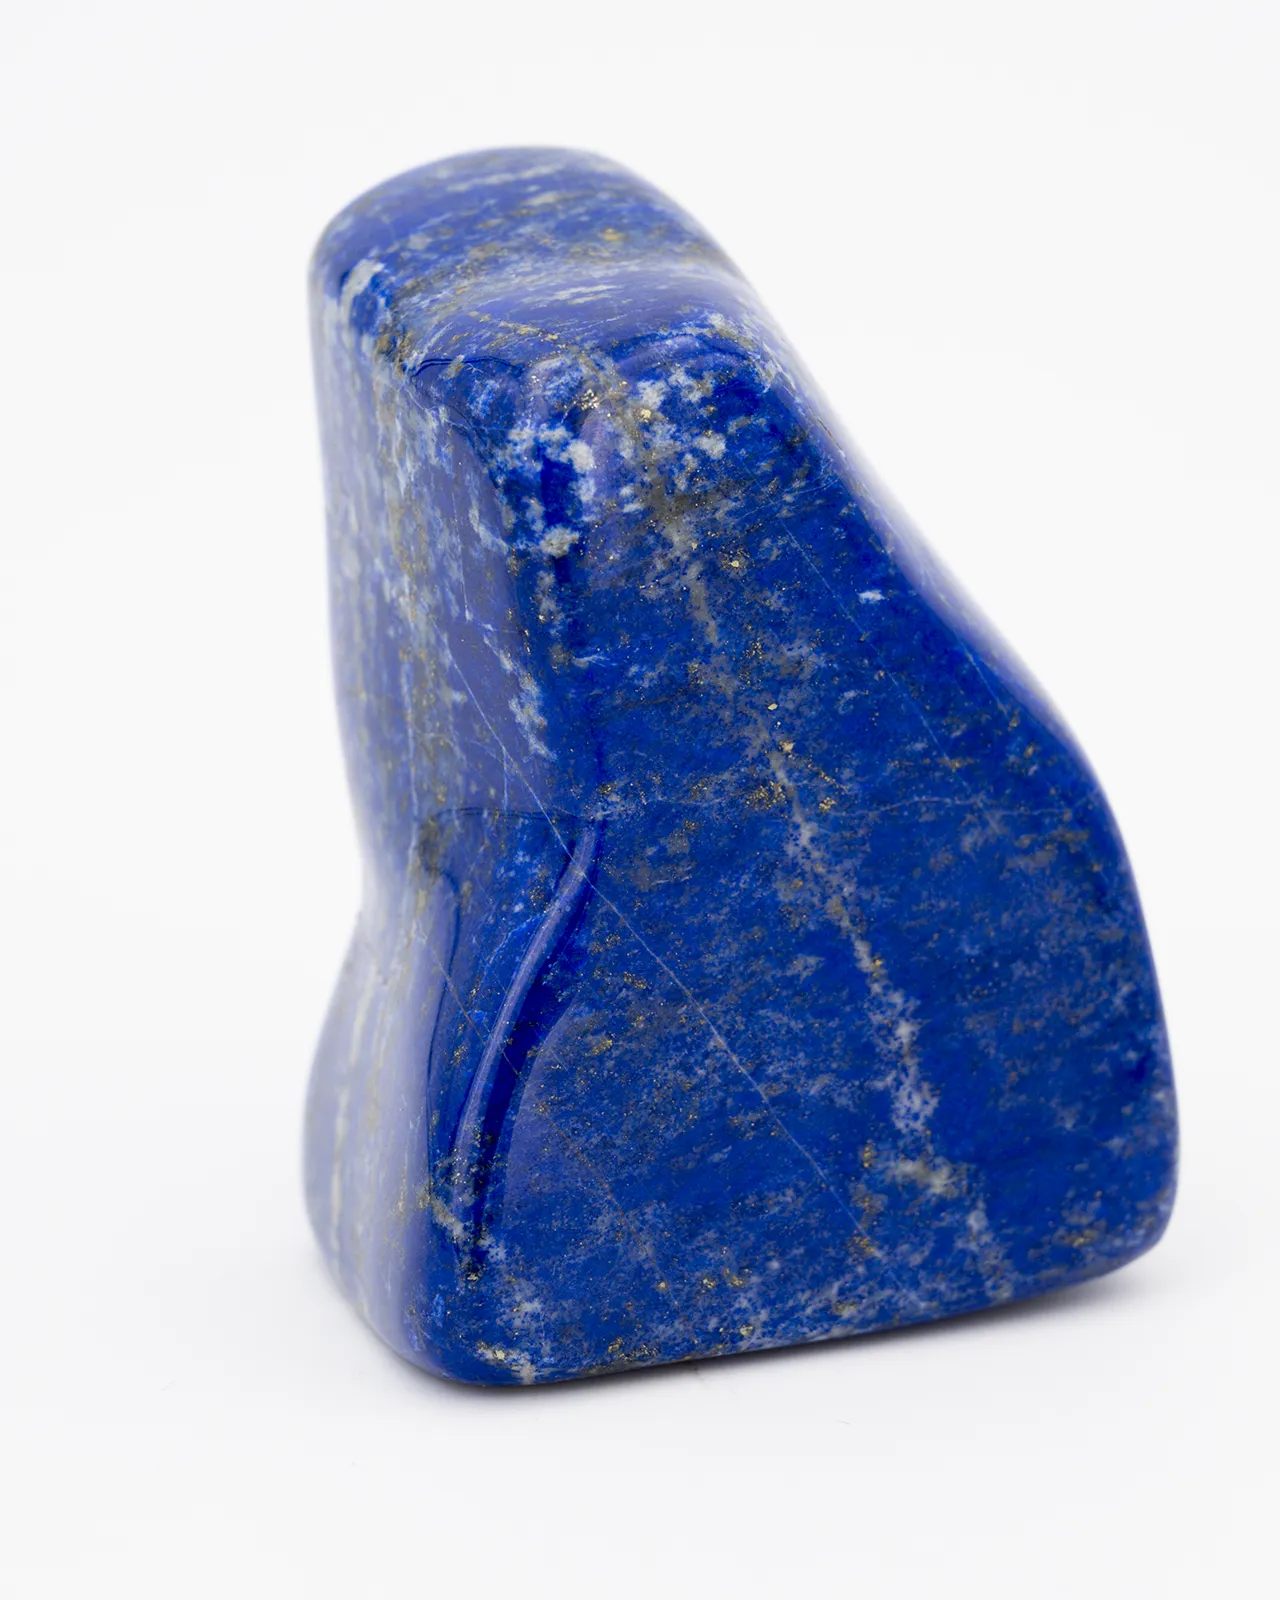 Lapis Lazuli en forme libre qui ressemble à une palette d'artiste peintre à transporter avec sois